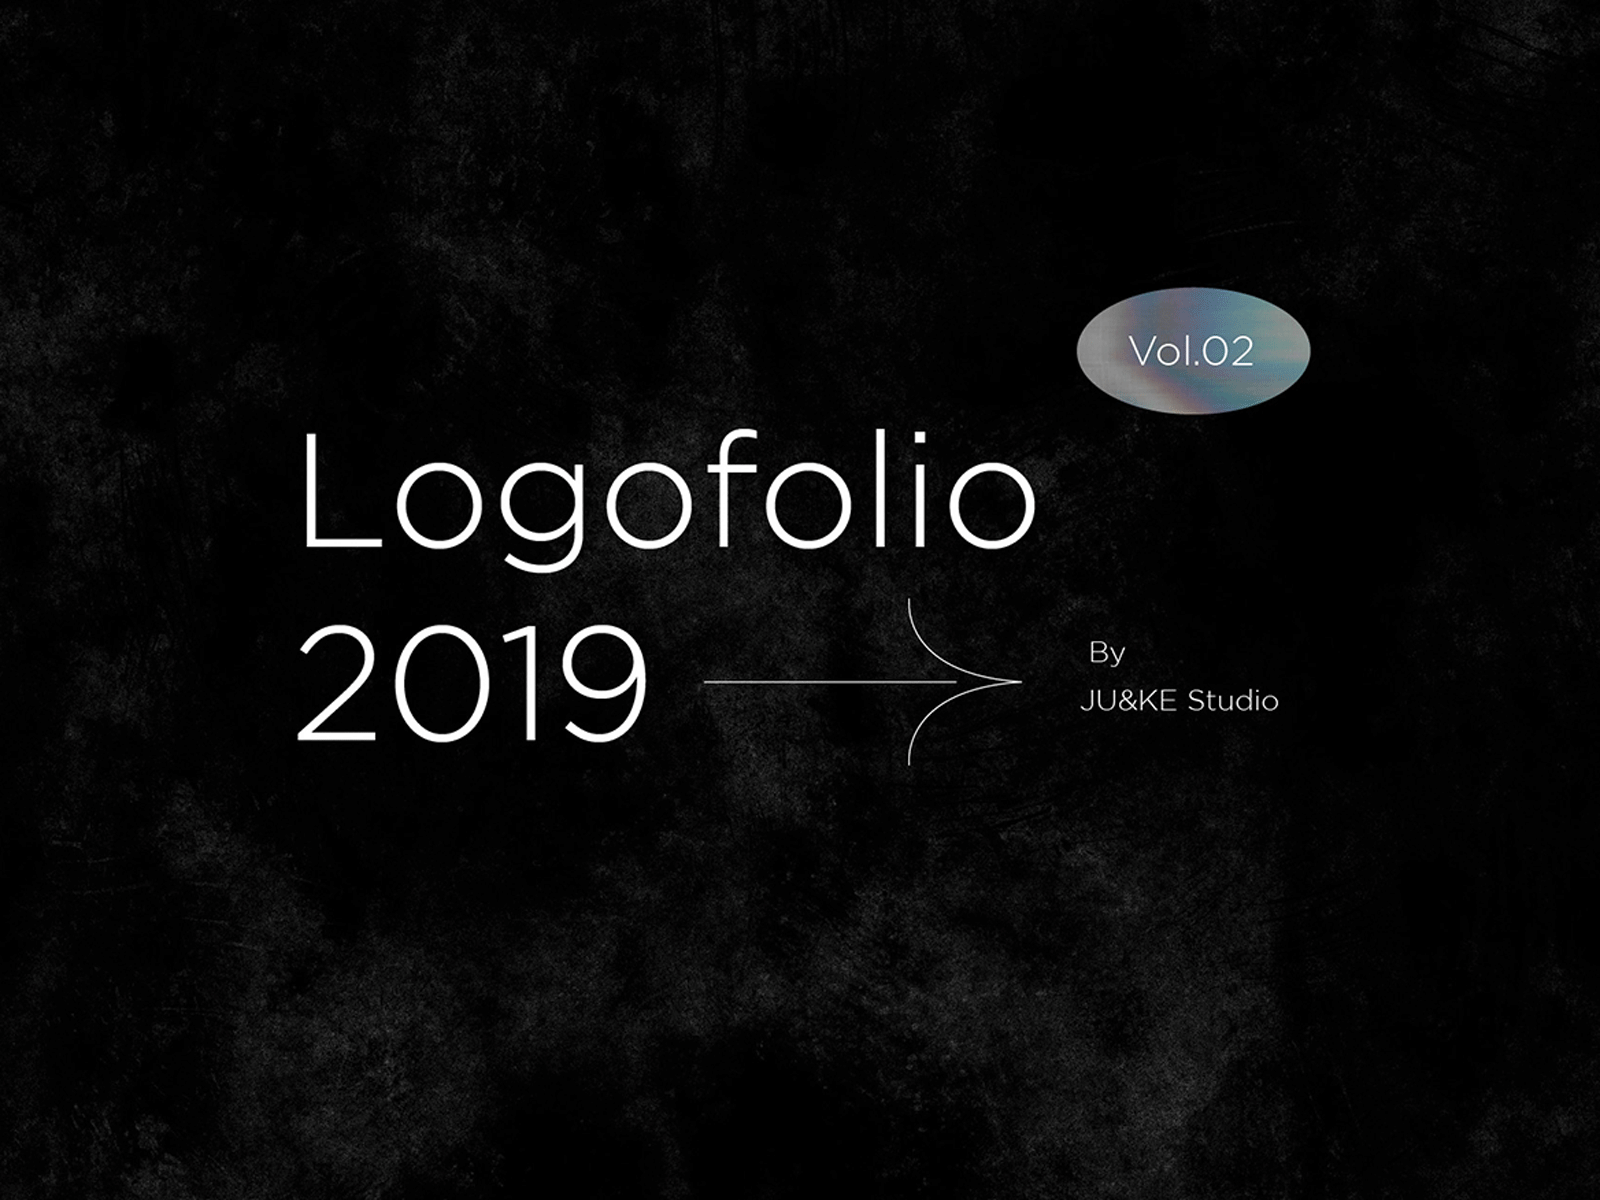 Logofolio - Vol. 02